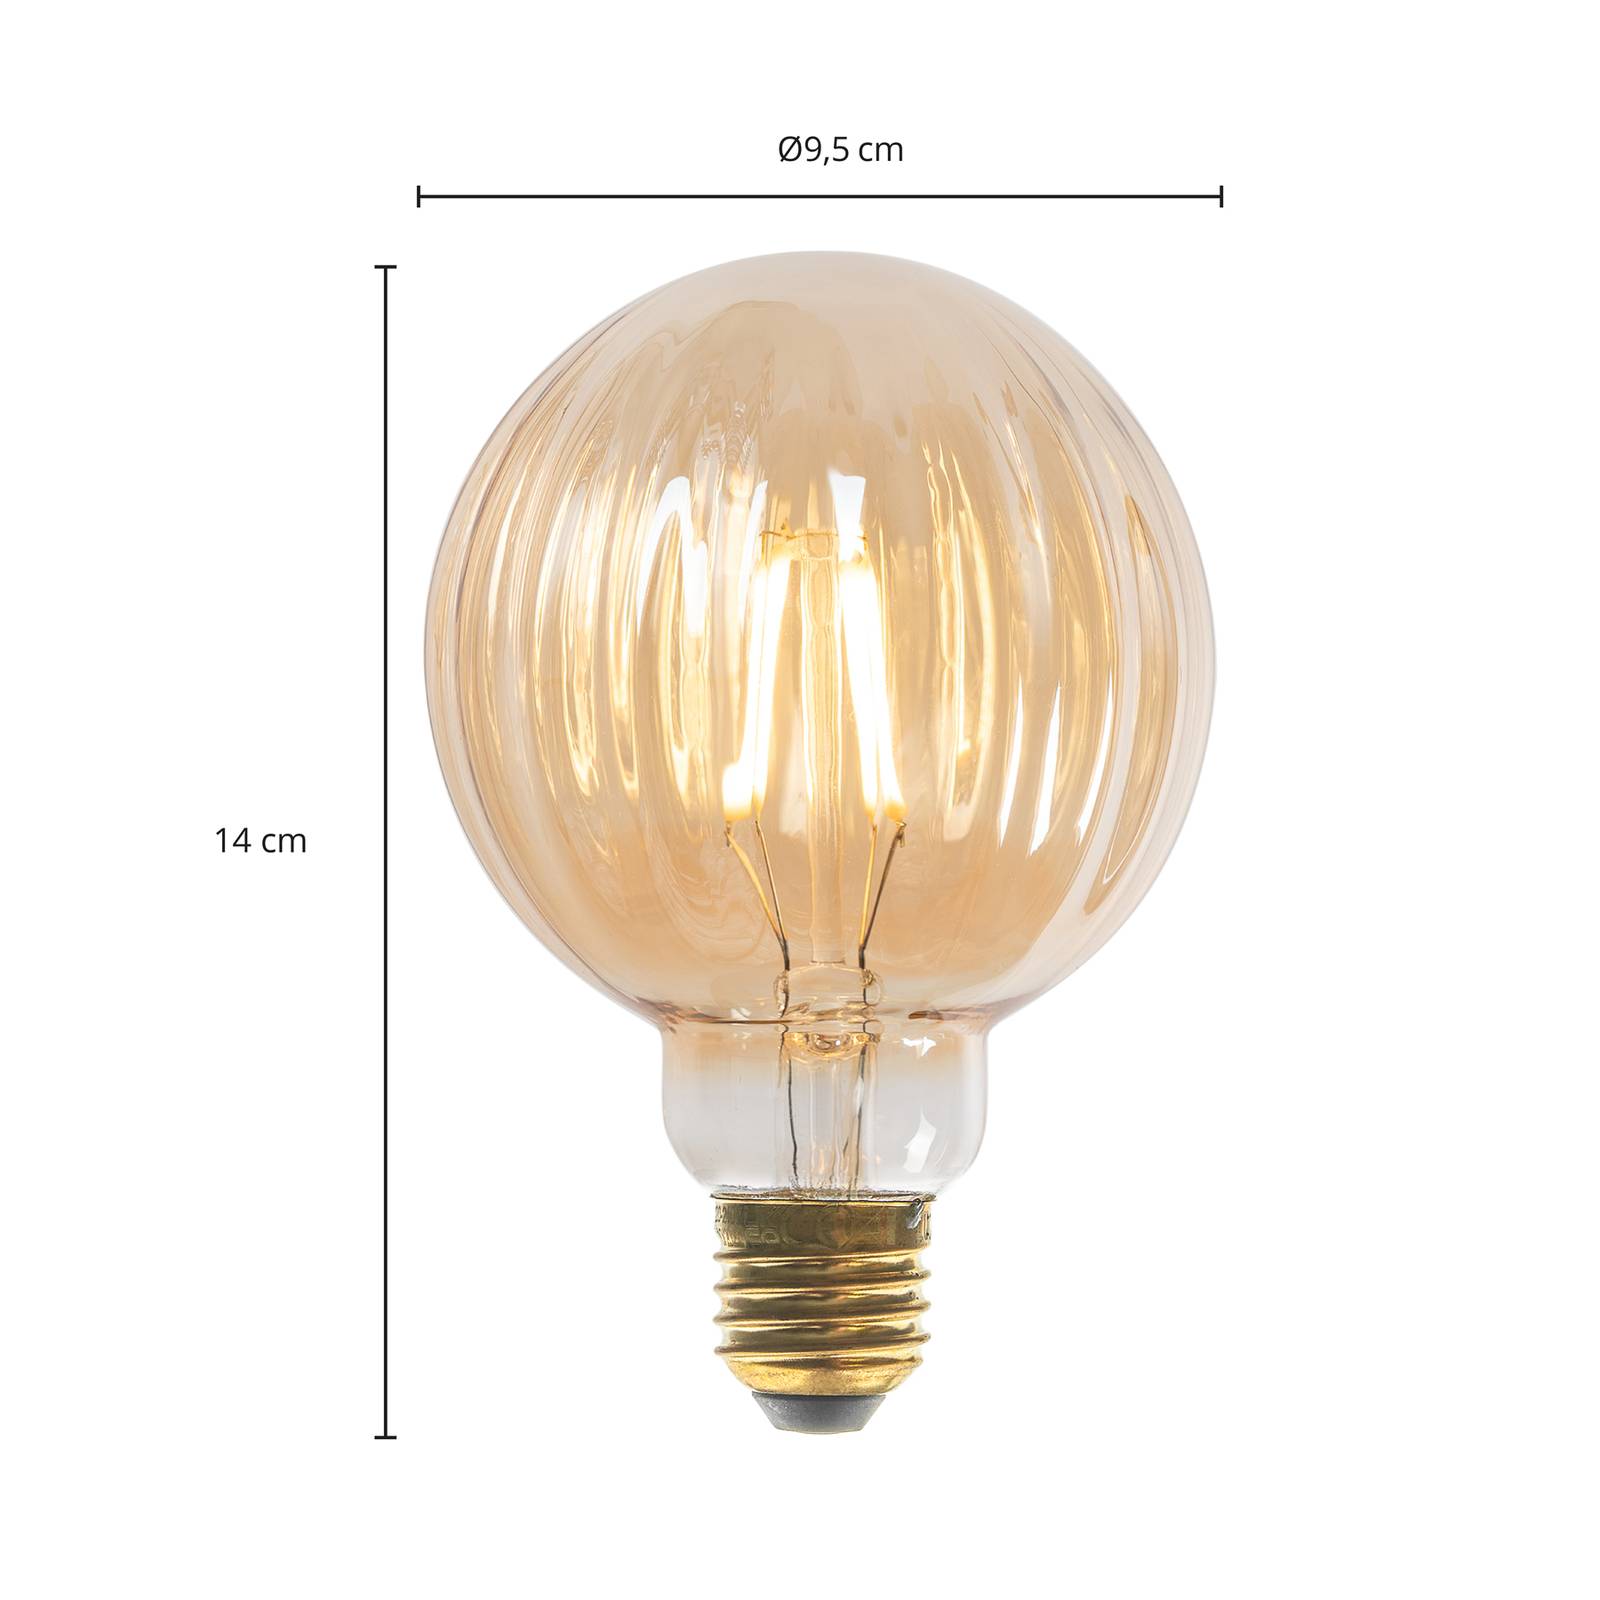 Lucande E27 3,8W LED-lampa G95, 2700K, 340lm, bärnstensfärgade spår